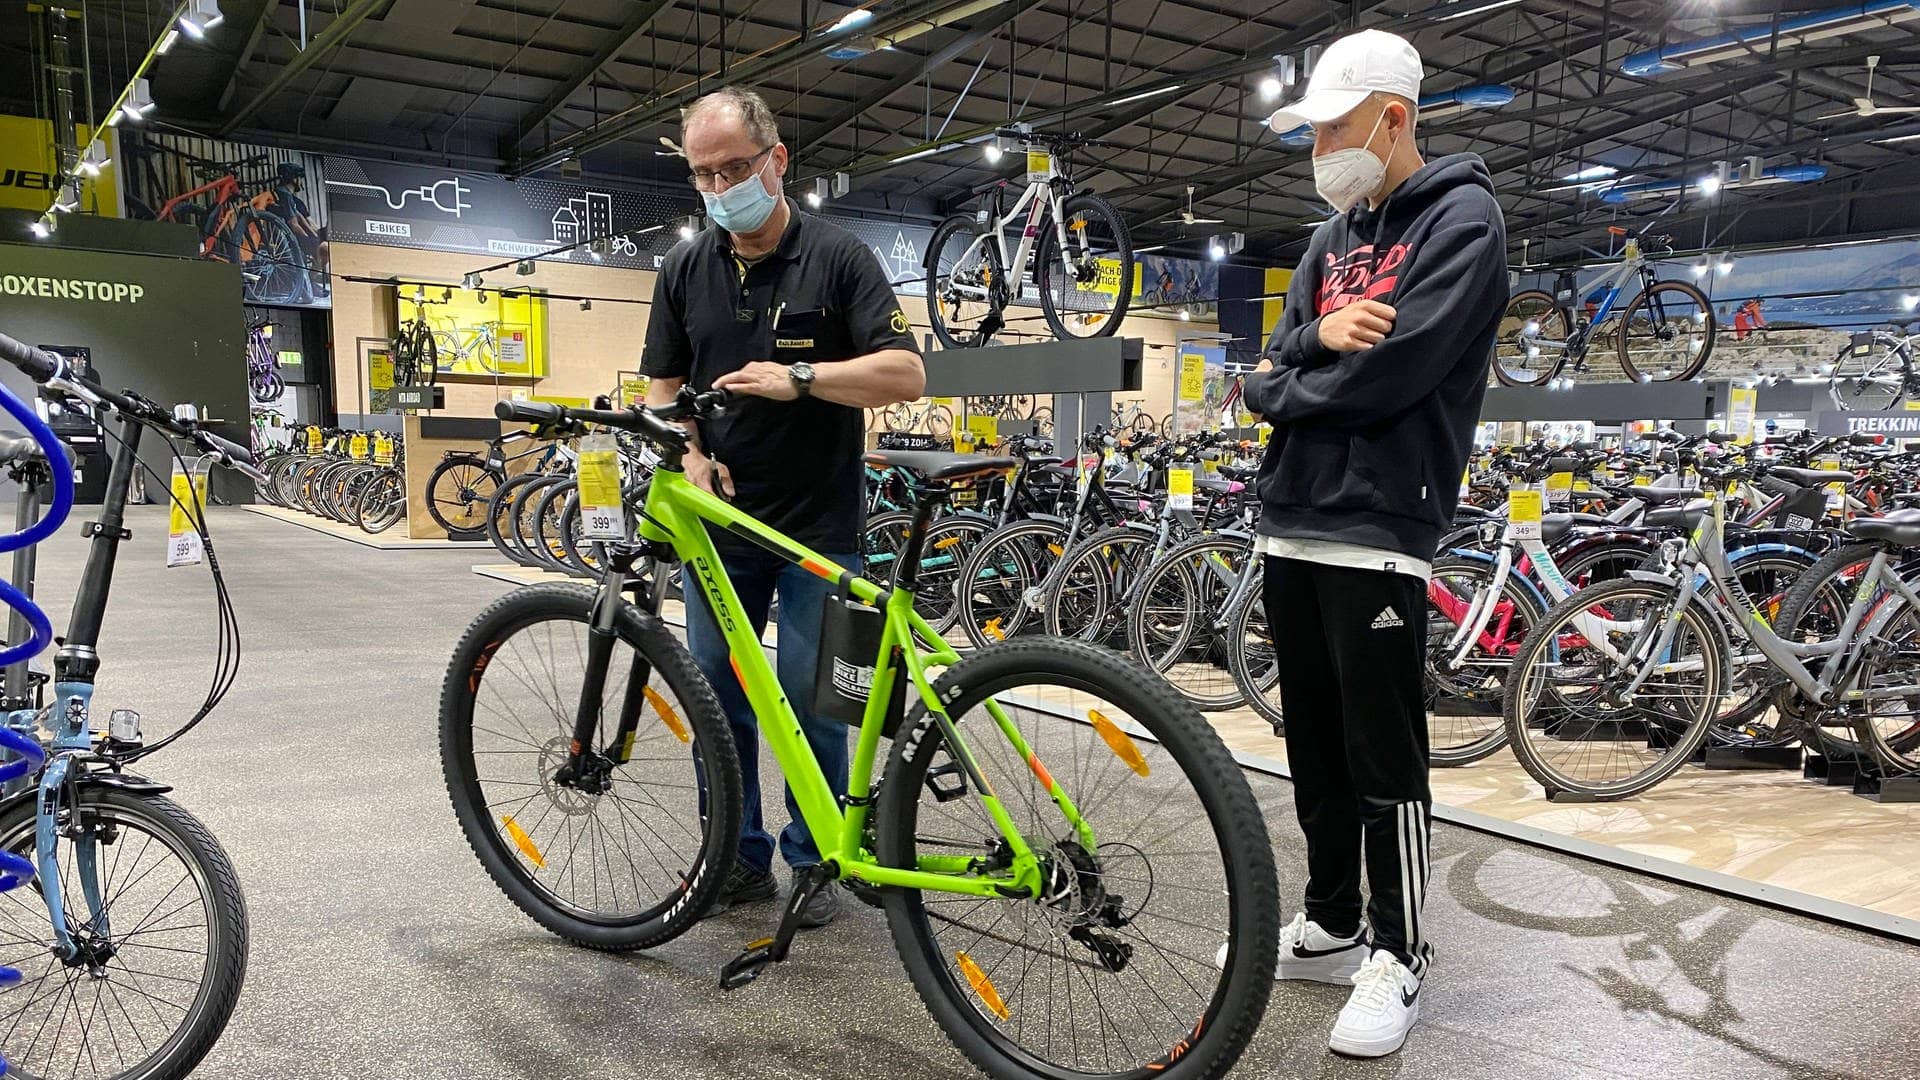 Ein Teenager beim Fahhradkauf in einem Zweirad Fachhandel. Ein Verkauefer beraet den jungen Kunden und stellt den Lenker eines grünen Bikes ein.